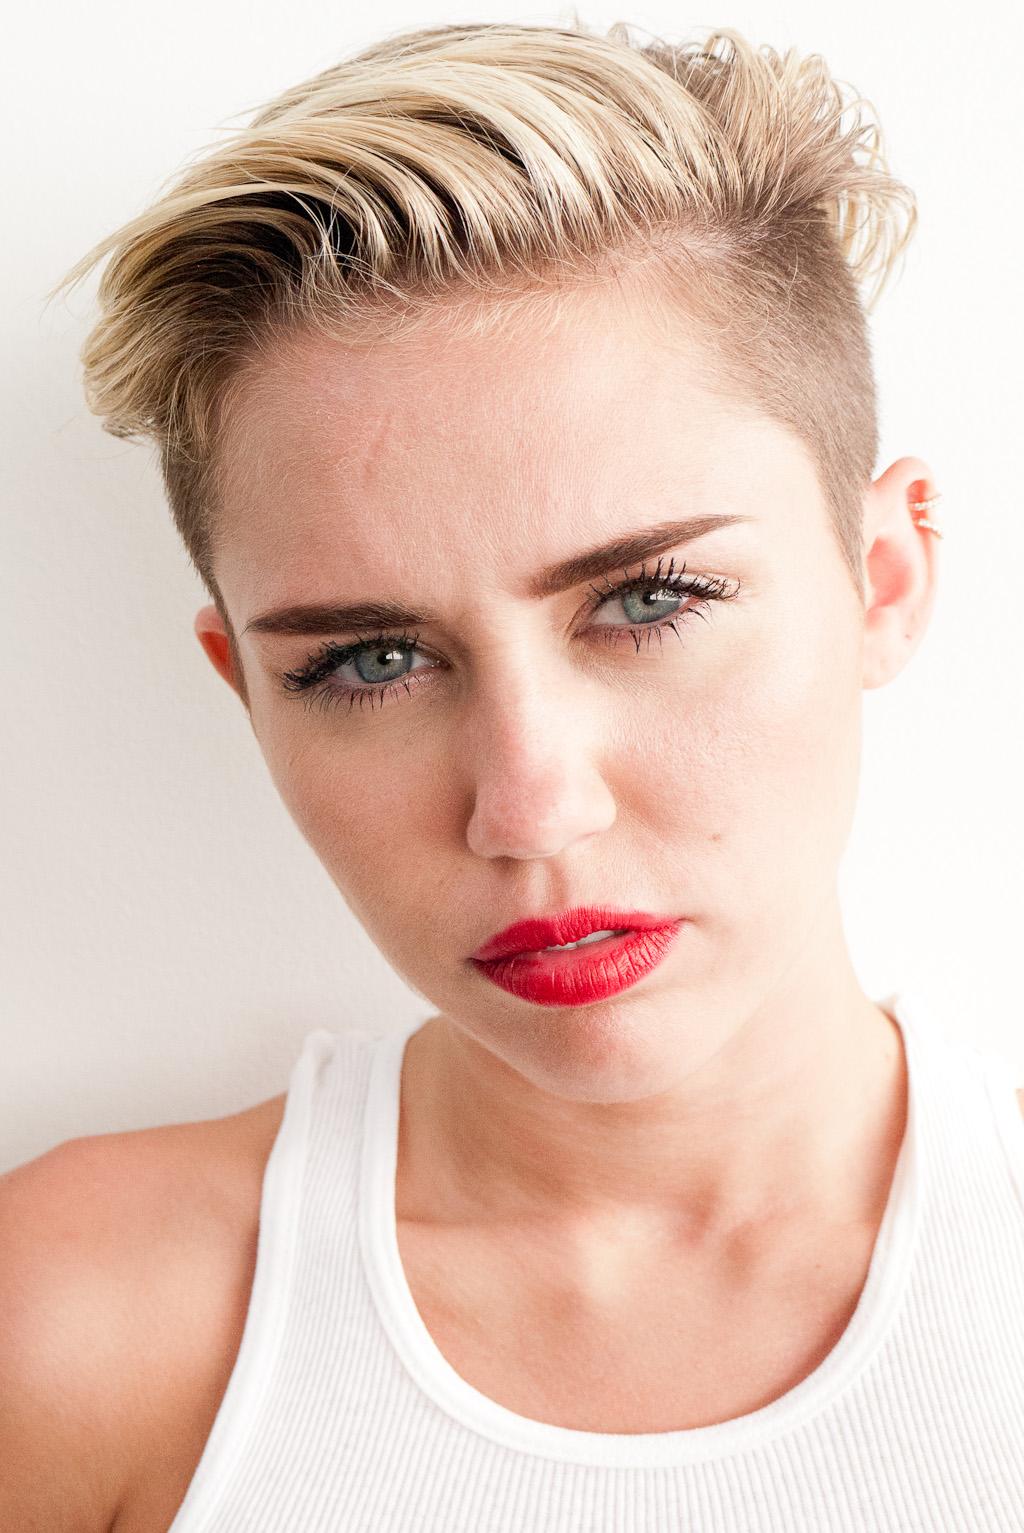 Miley Cyrus See Through Panties Bts Set Leaked 0017